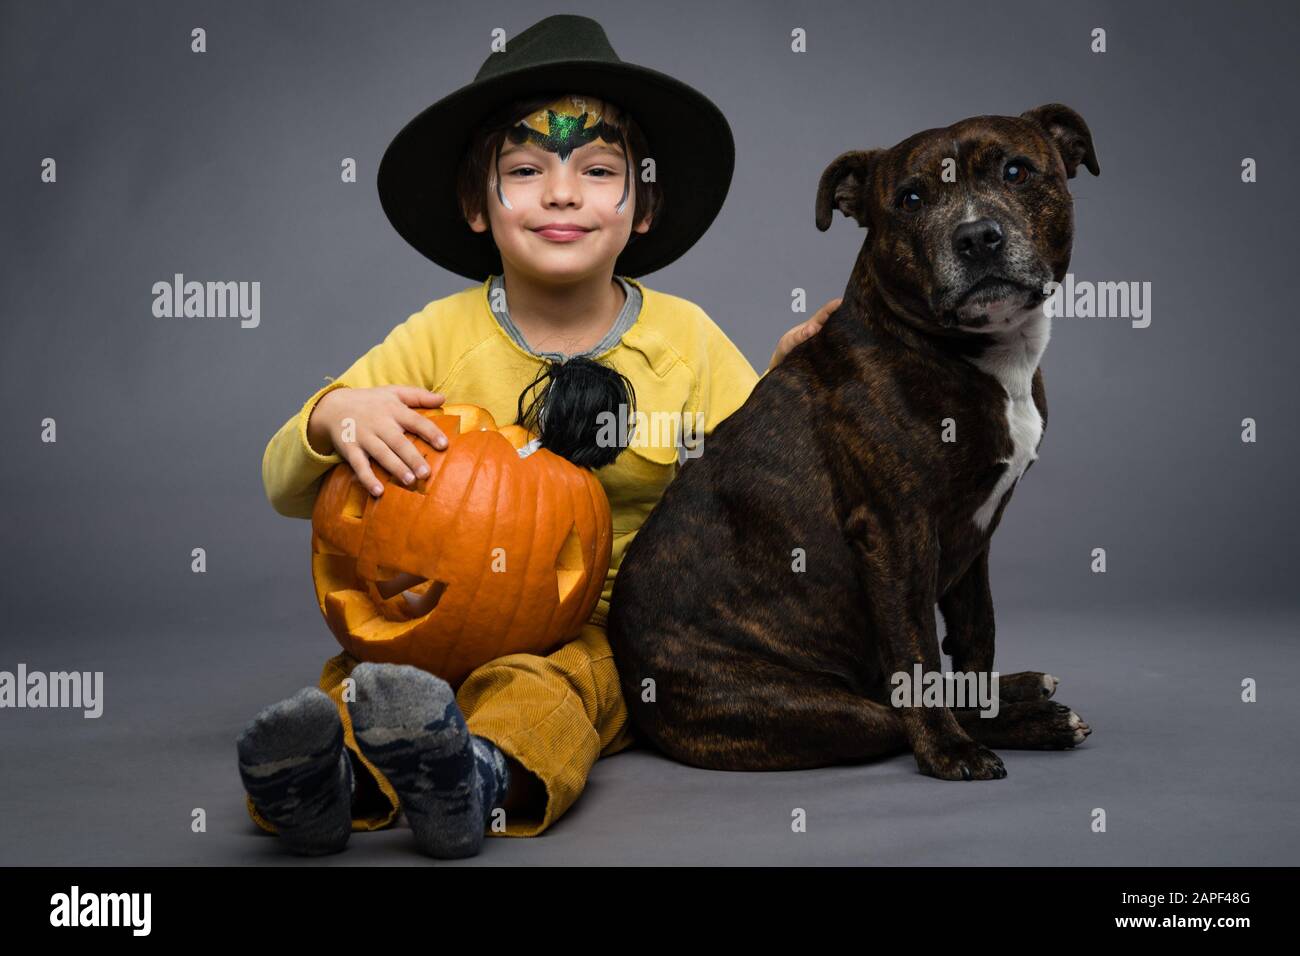 Allegro ragazzino in un cappello tiene una zucca con una bambola spaventosa, il cane si siede accanto a lui, su uno sfondo grigio. Festa di Halloween Foto Stock